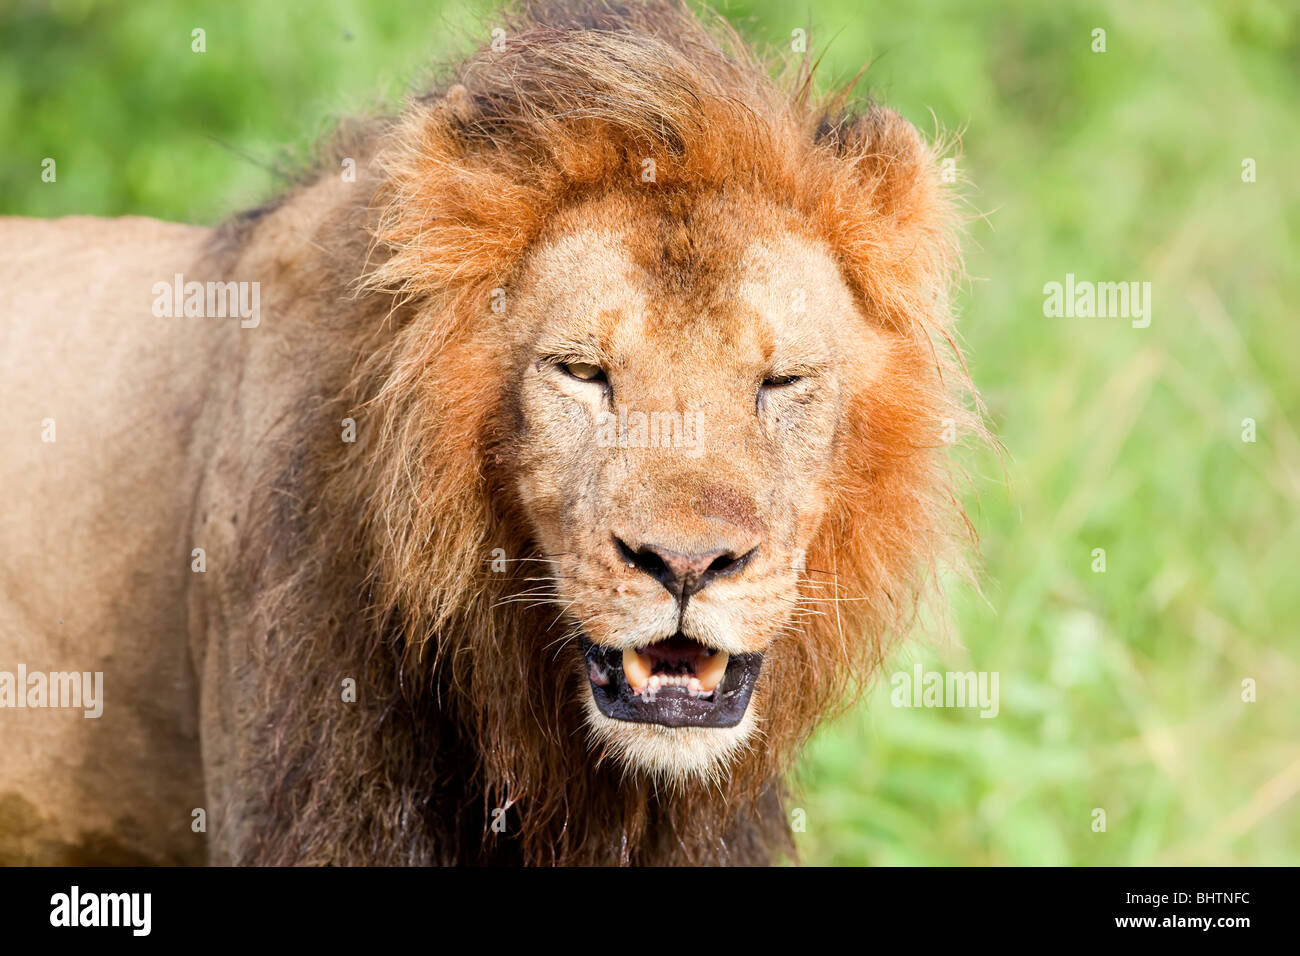 Primer plano de un león macho con la boca abierta, mostrando los dientes Foto de stock